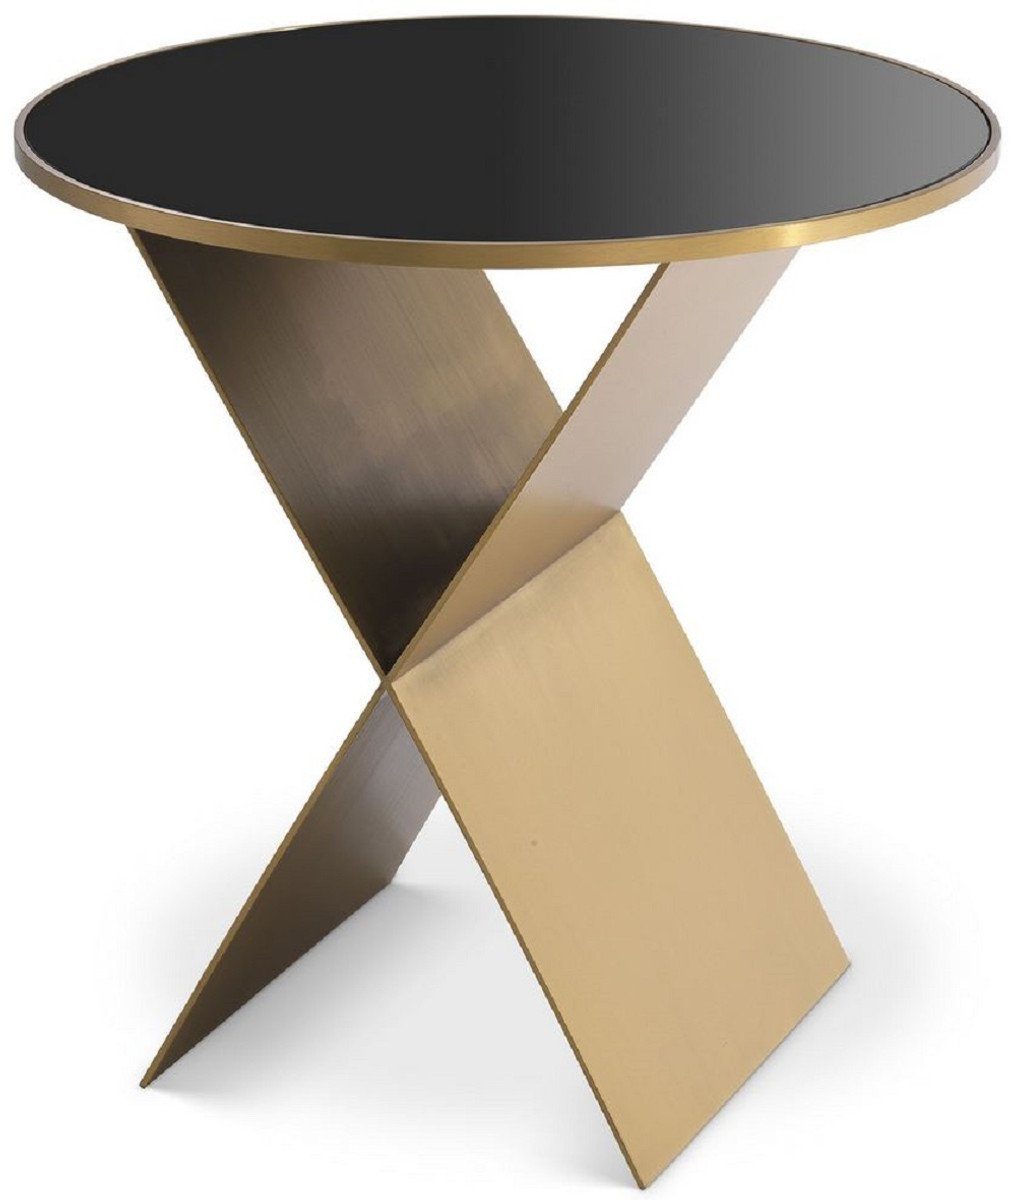 Casa Padrino Beistelltisch Luxus Beistelltisch Messingfarben / Schwarz Ø 50 x H. 50 cm - Runder Edelstahl Tisch mit Glasplatte - Möbel - Luxus Kollektion